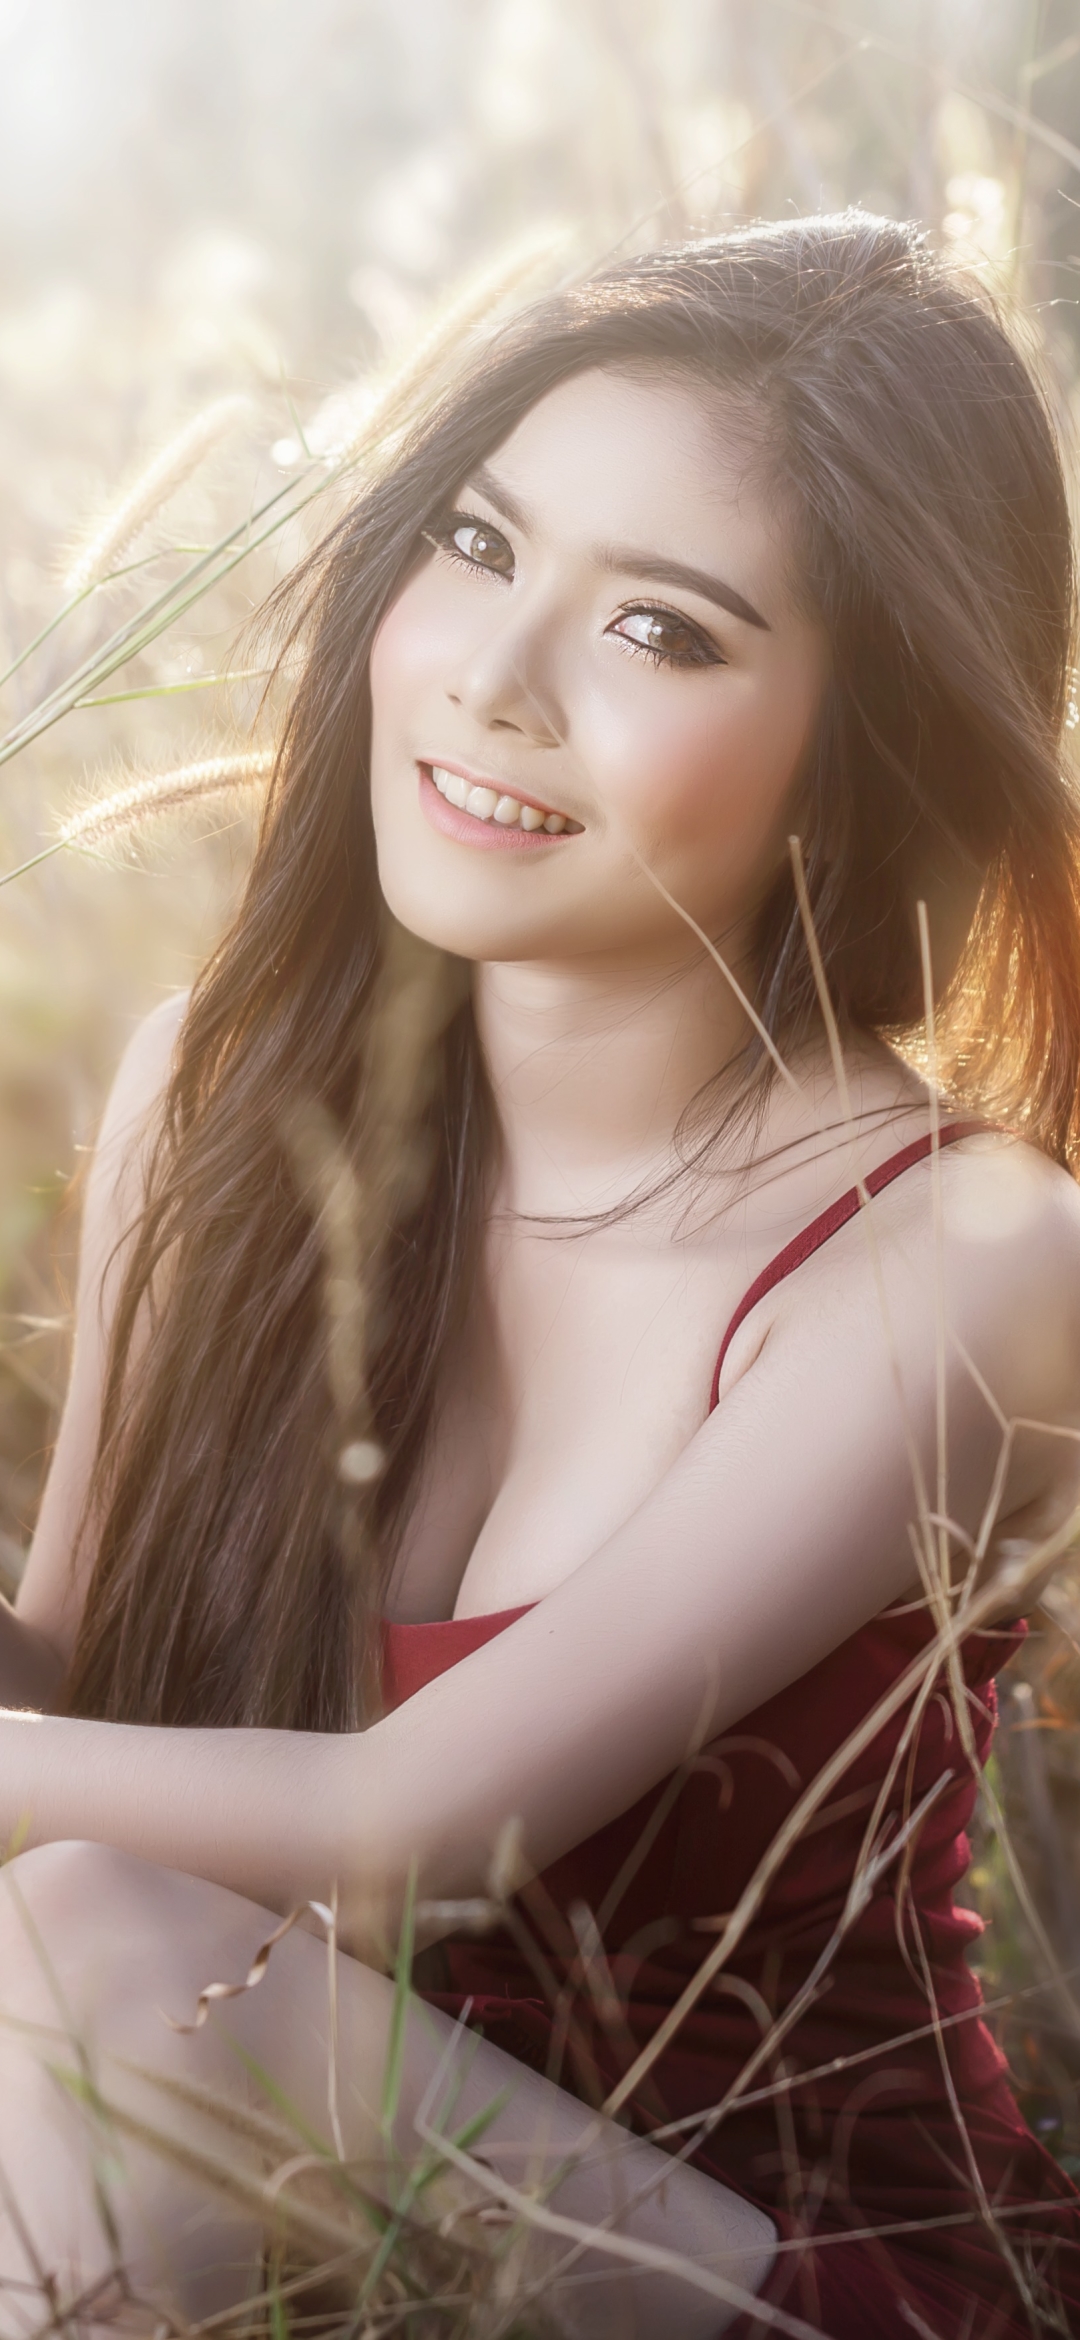 Download mobile wallpaper Smile, Brunette, Model, Women, Asian, Long Hair for free.